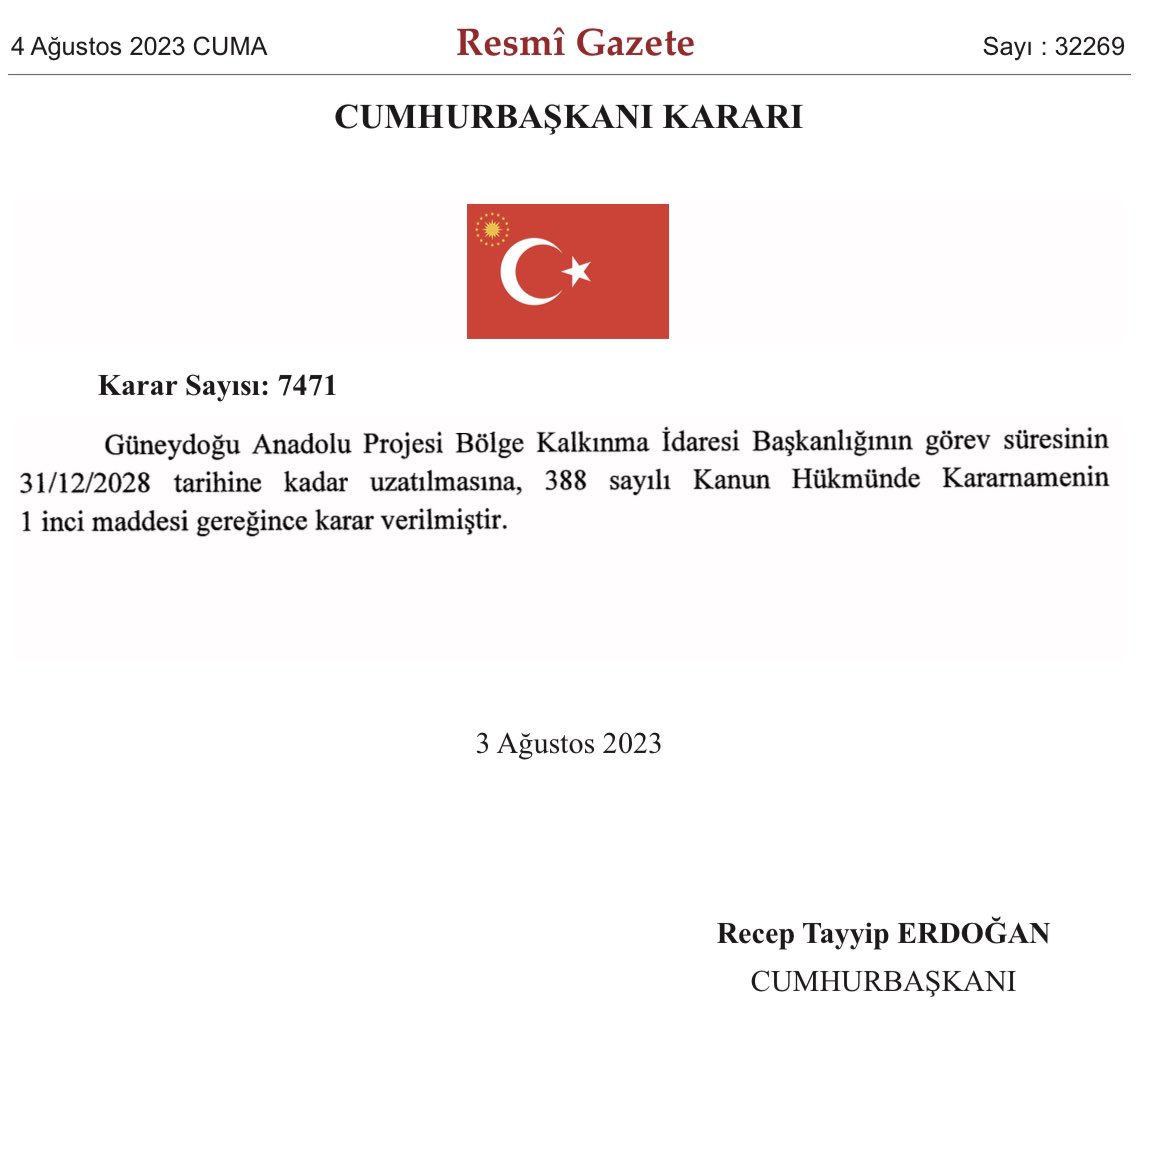 Sayın Cumhurbaşkanımız @RTErdogan’ın takdirleriyle, Güneydoğu Anadolu Projesi (GAP) Bölge Kalkınma İdaresi Başkanlığının görev süresi 31 Aralık 2028’e kadar uzatıldı. GAP Bölgesinin kalkınmasını daha da hızlandıracağız. 🇹🇷